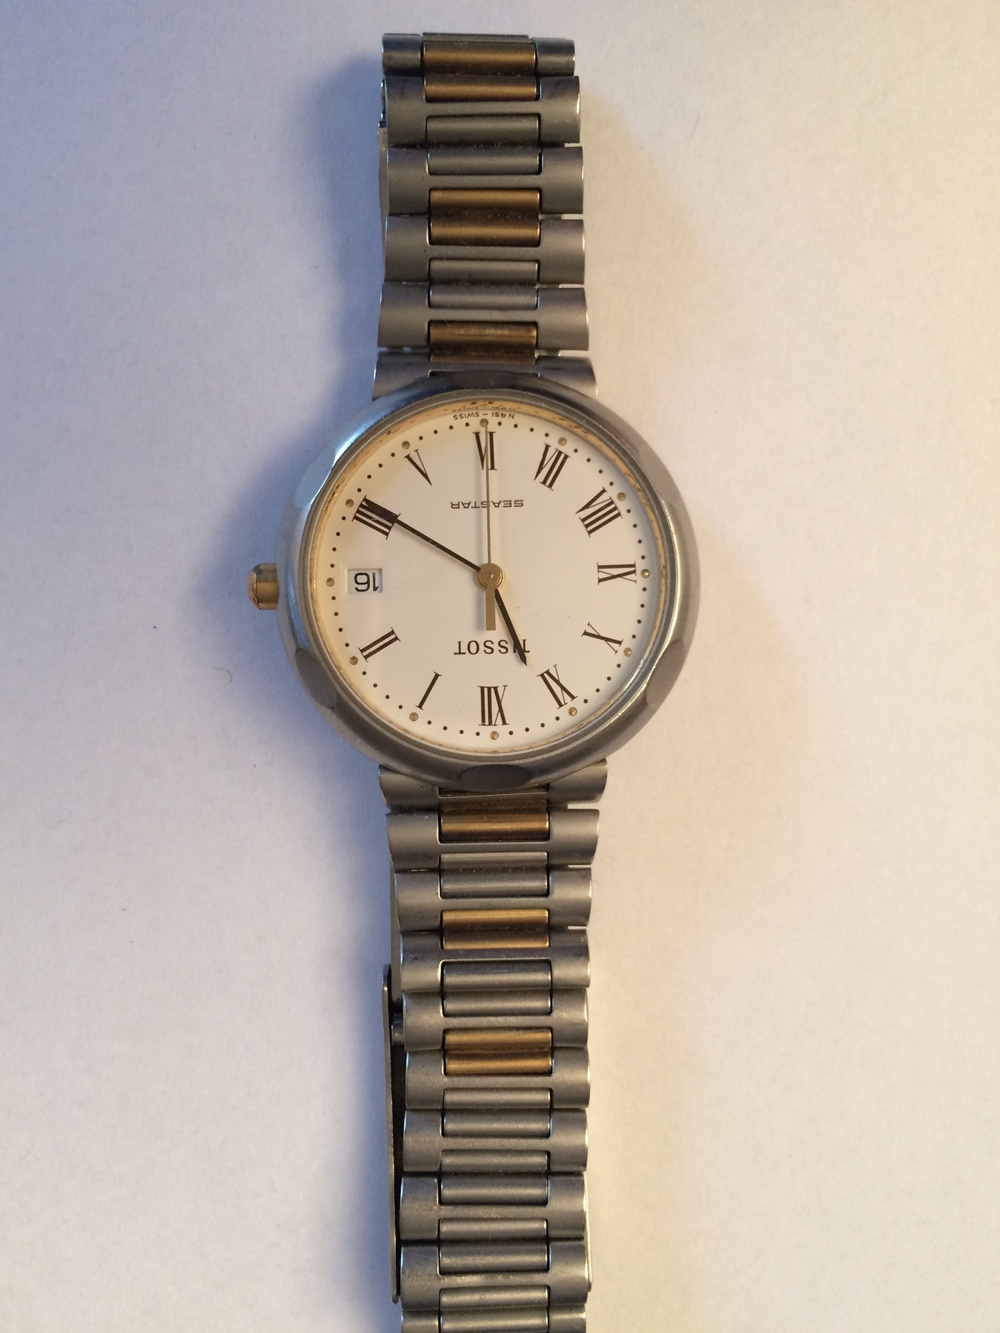 TISSOT Damen-Armbanduhr Metall silberfarbig mit Metall-Gliederband, wenig getragen mit Datumsanzeige